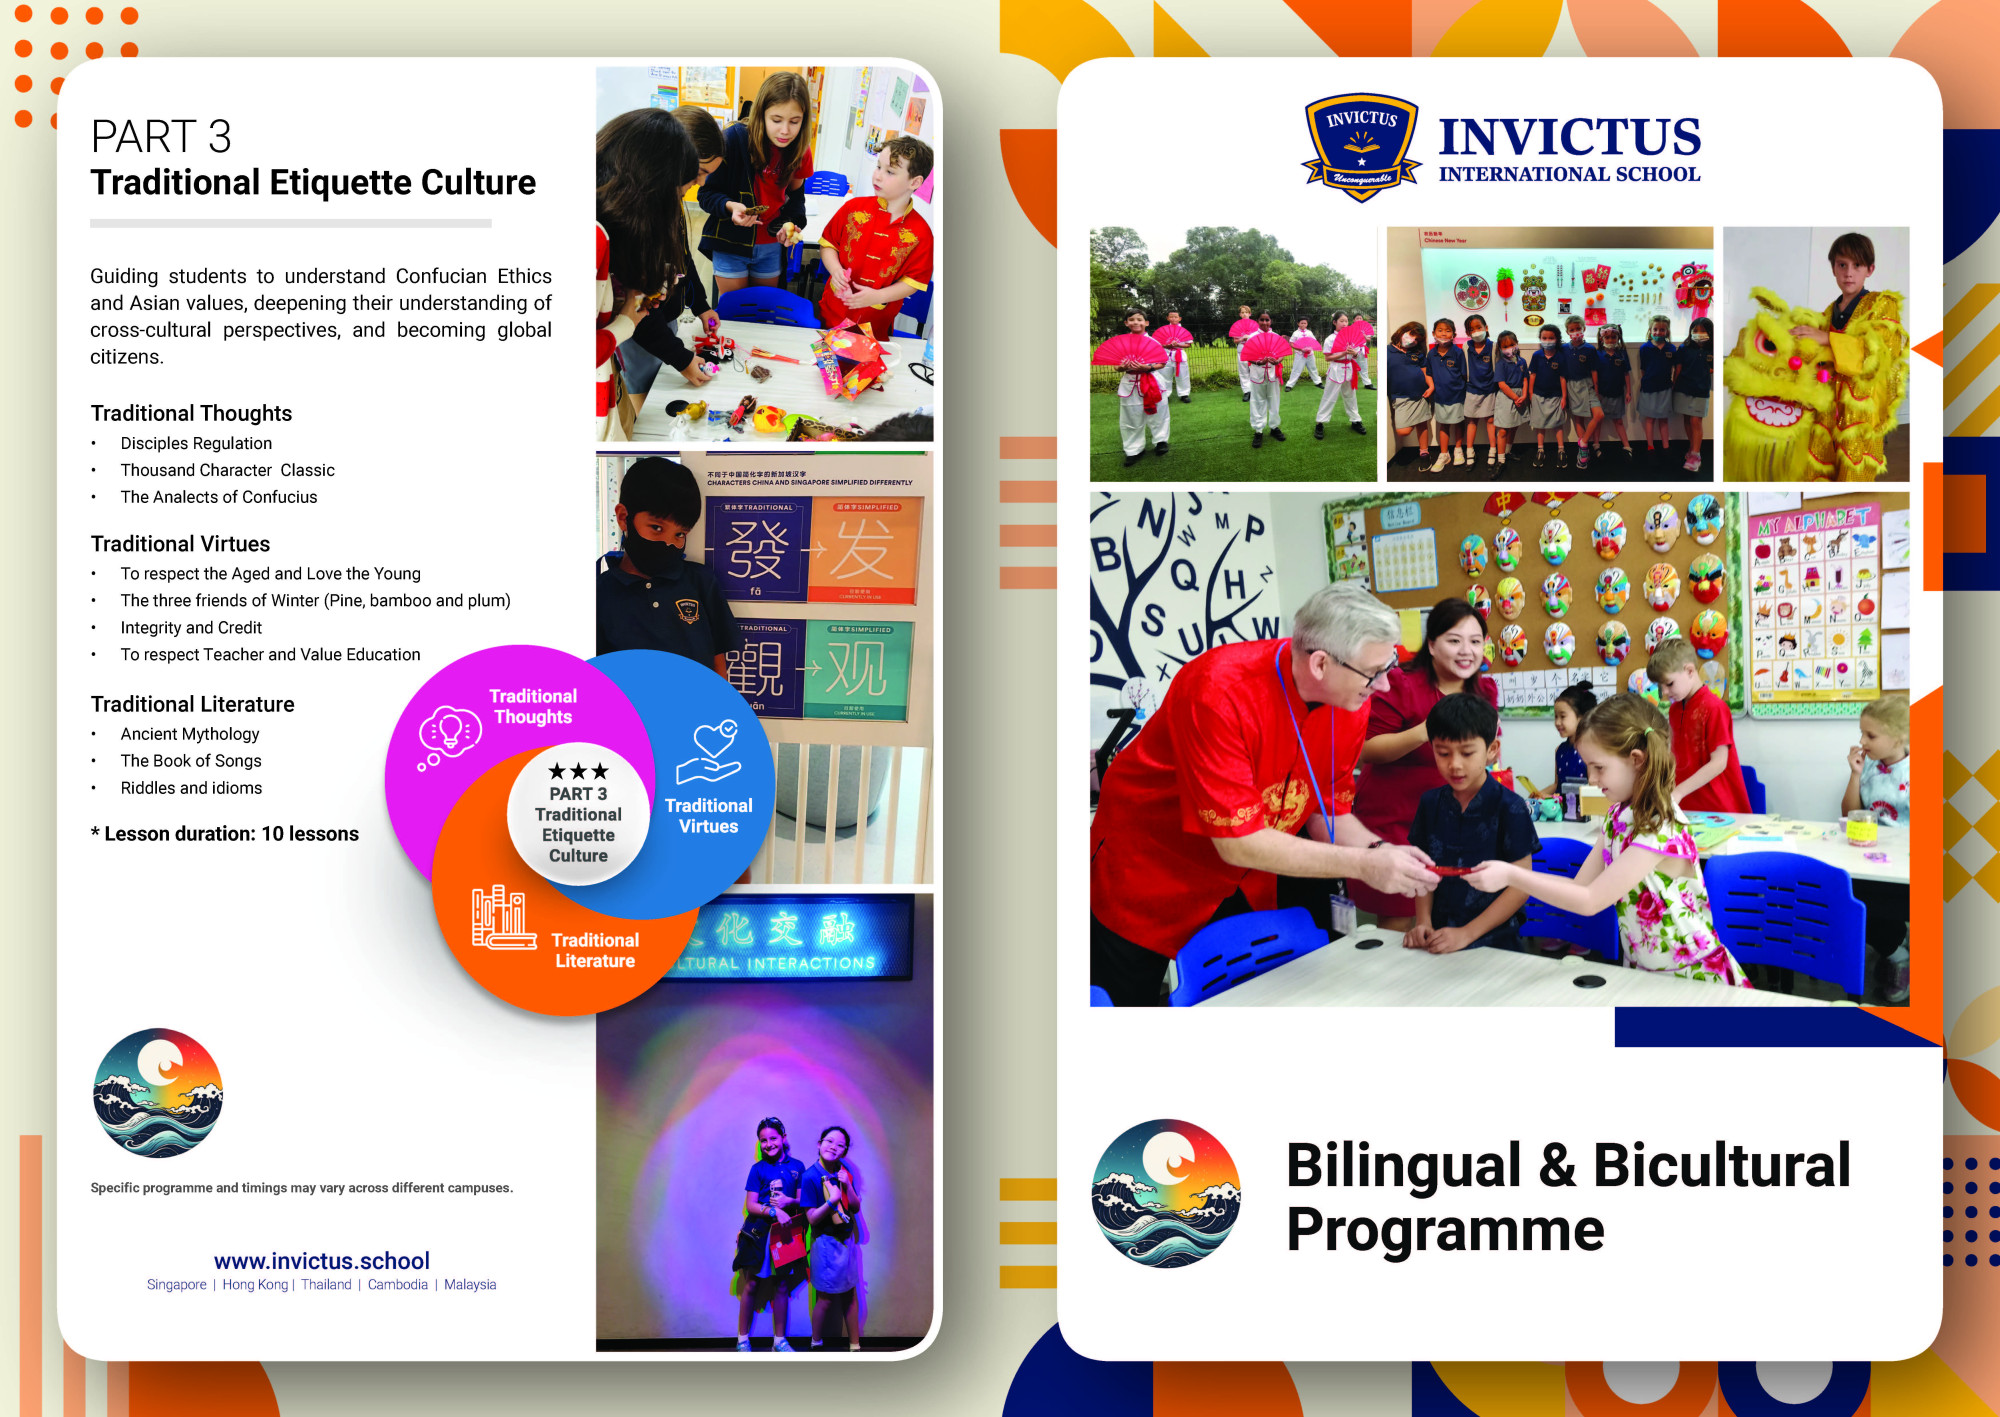 Bilingual & Bicultural Programme